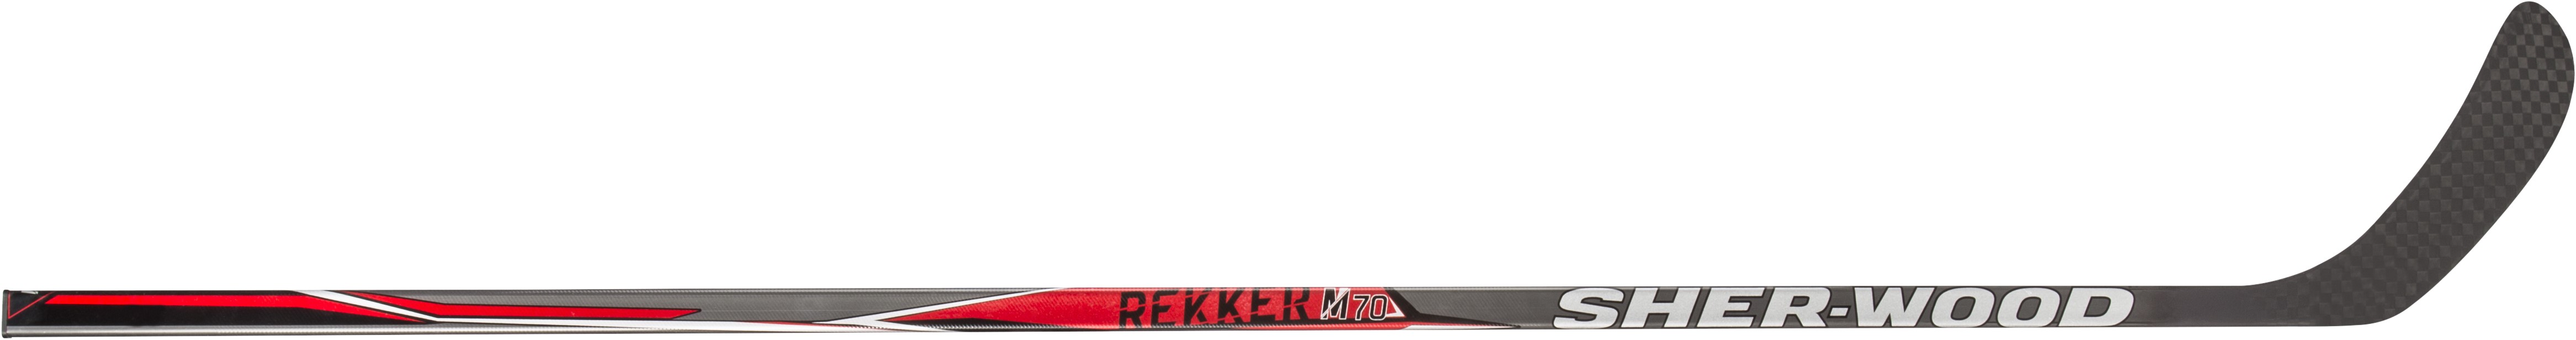 Клюшка SHER-WOOD REKKER M70 SR